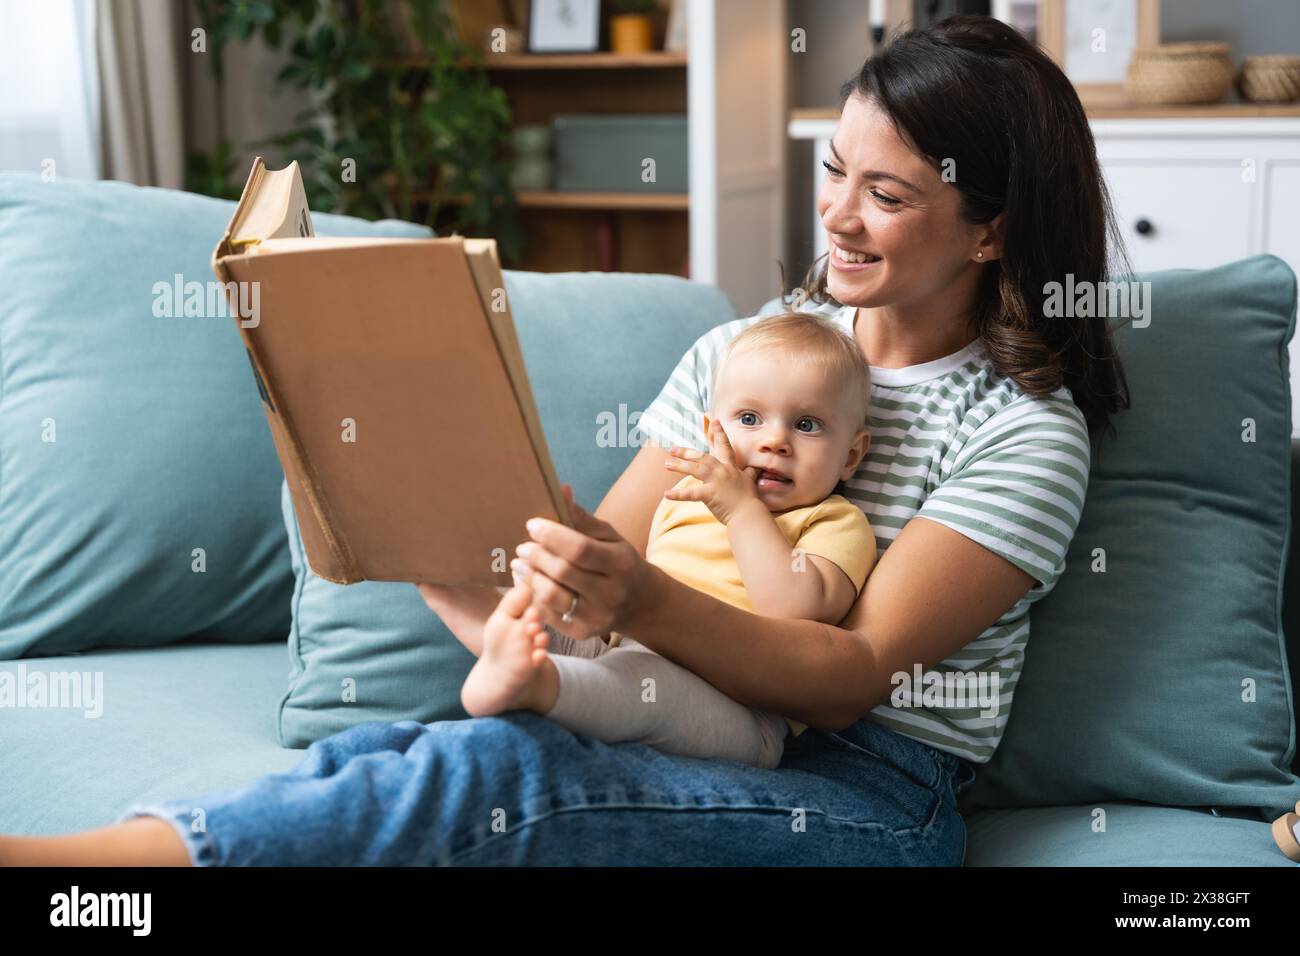 Jeune mère heureuse lisant un livre de conte de fées à son bébé. Maman et enfant assis sur le canapé à la maison profitant de l'imagination. Vie parent et enfant Banque D'Images